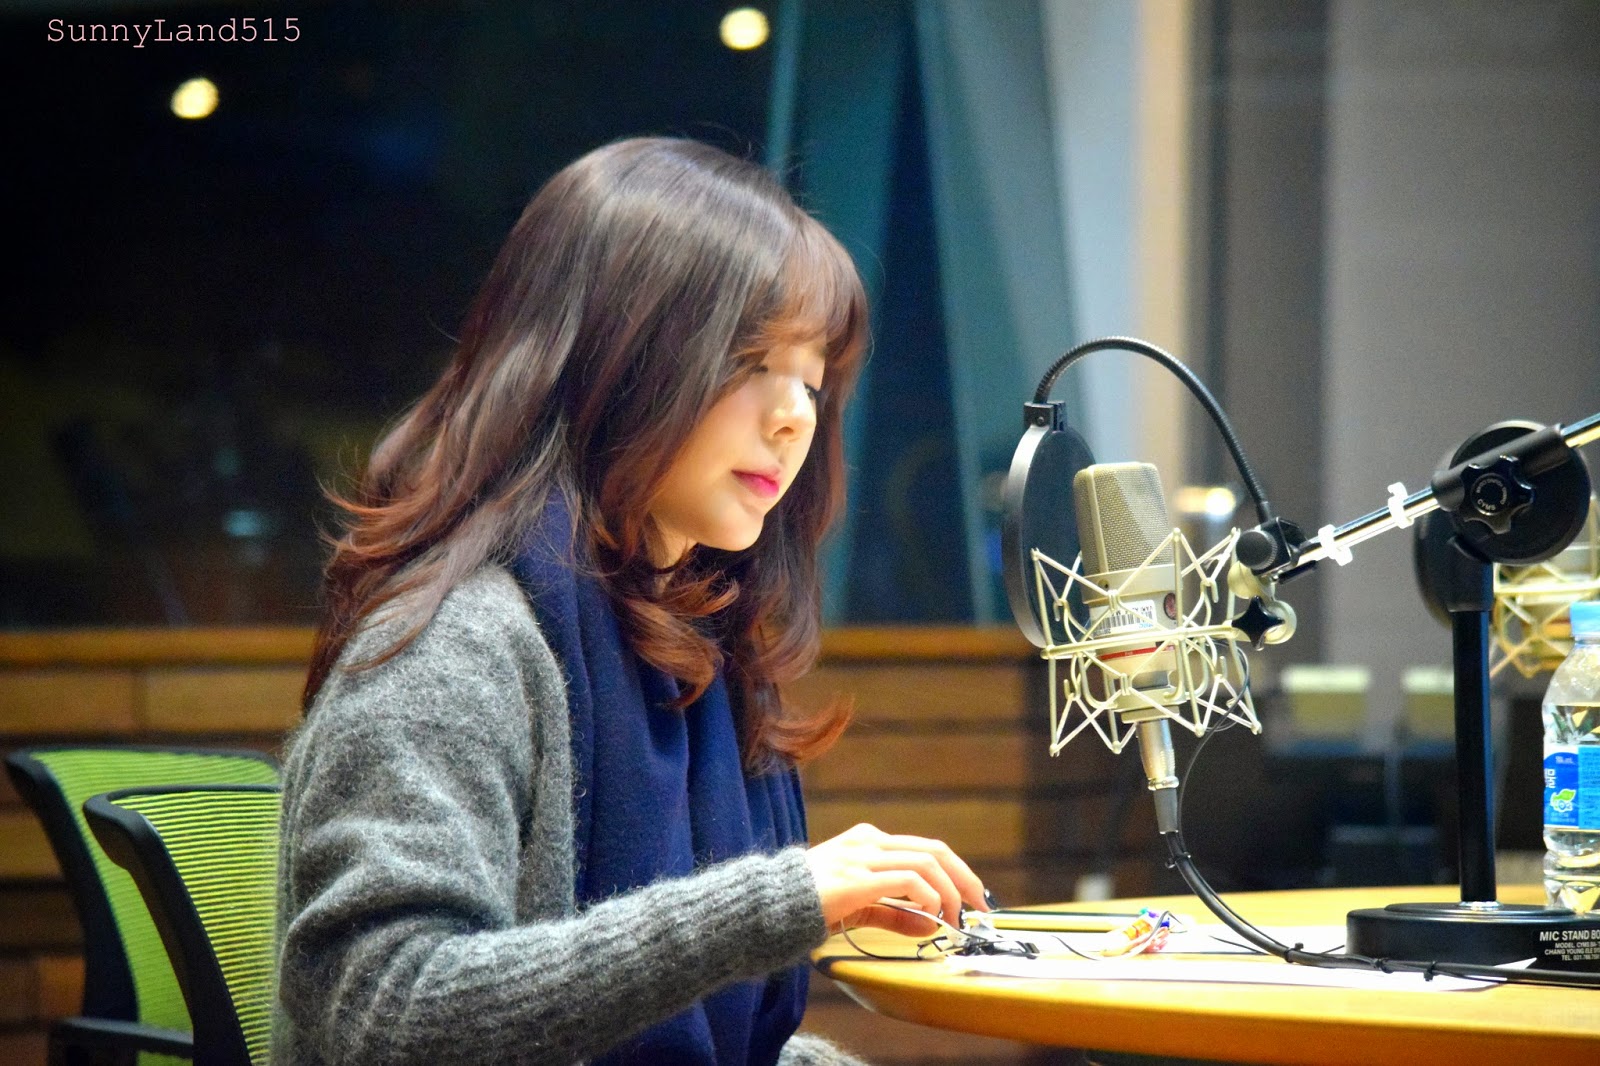 [OTHER][06-02-2015]Hình ảnh mới nhất từ DJ Sunny tại Radio MBC FM4U - "FM Date" - Page 10 DSC_0224_Fotor